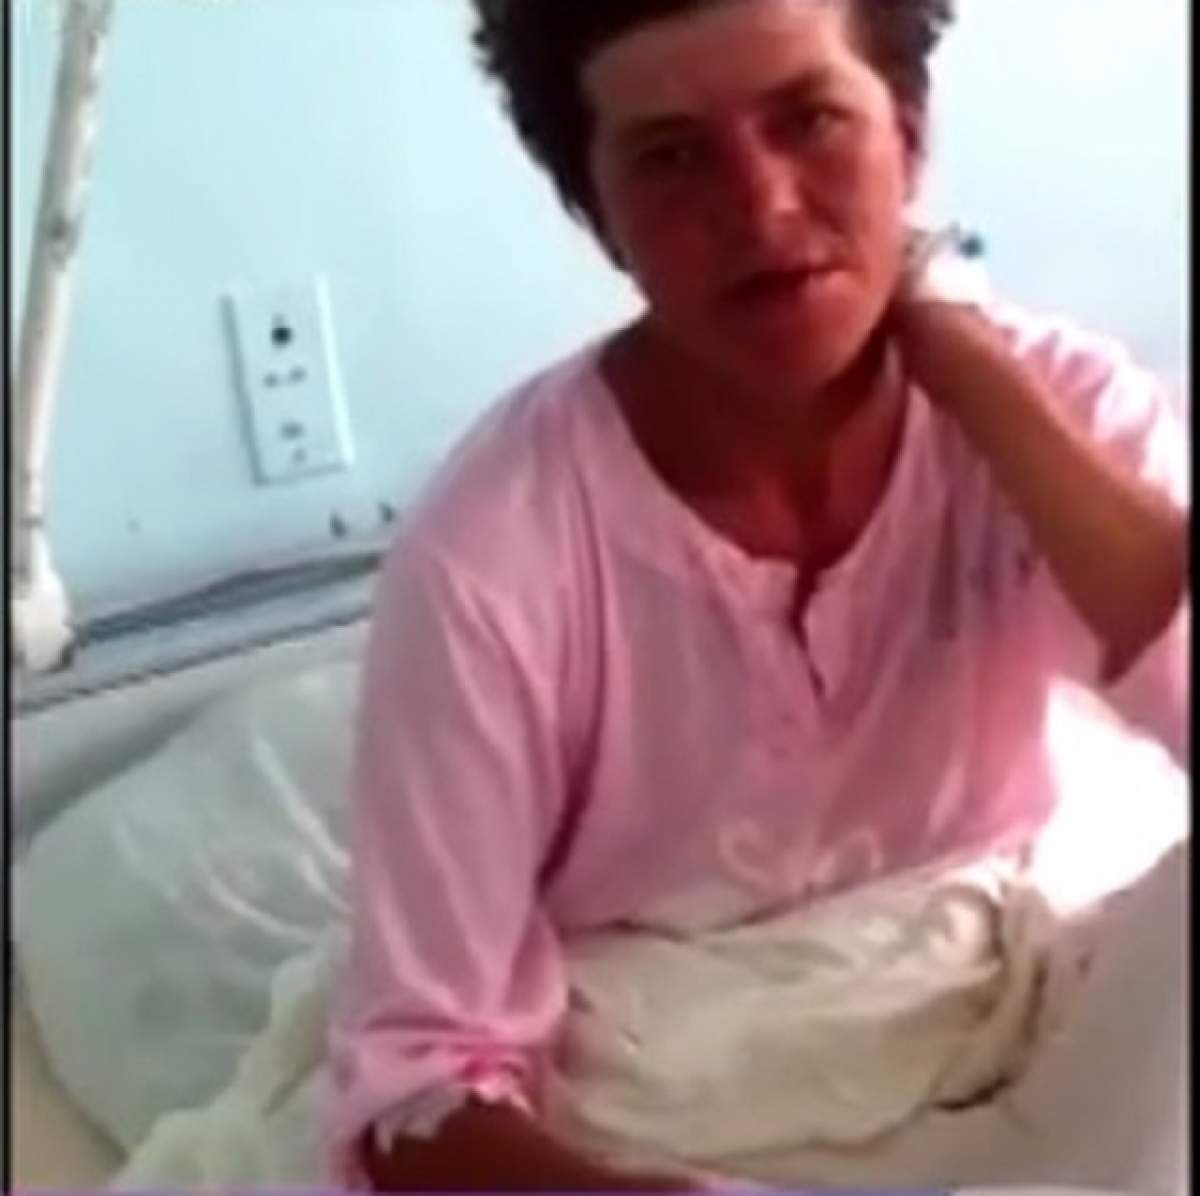 VIDEO / DECLARAŢIA HALUCINANTĂ a mamei care şi-a incendiat cei 3 copii, la o zi după fapta înfiorătoare: "I-am iubit"